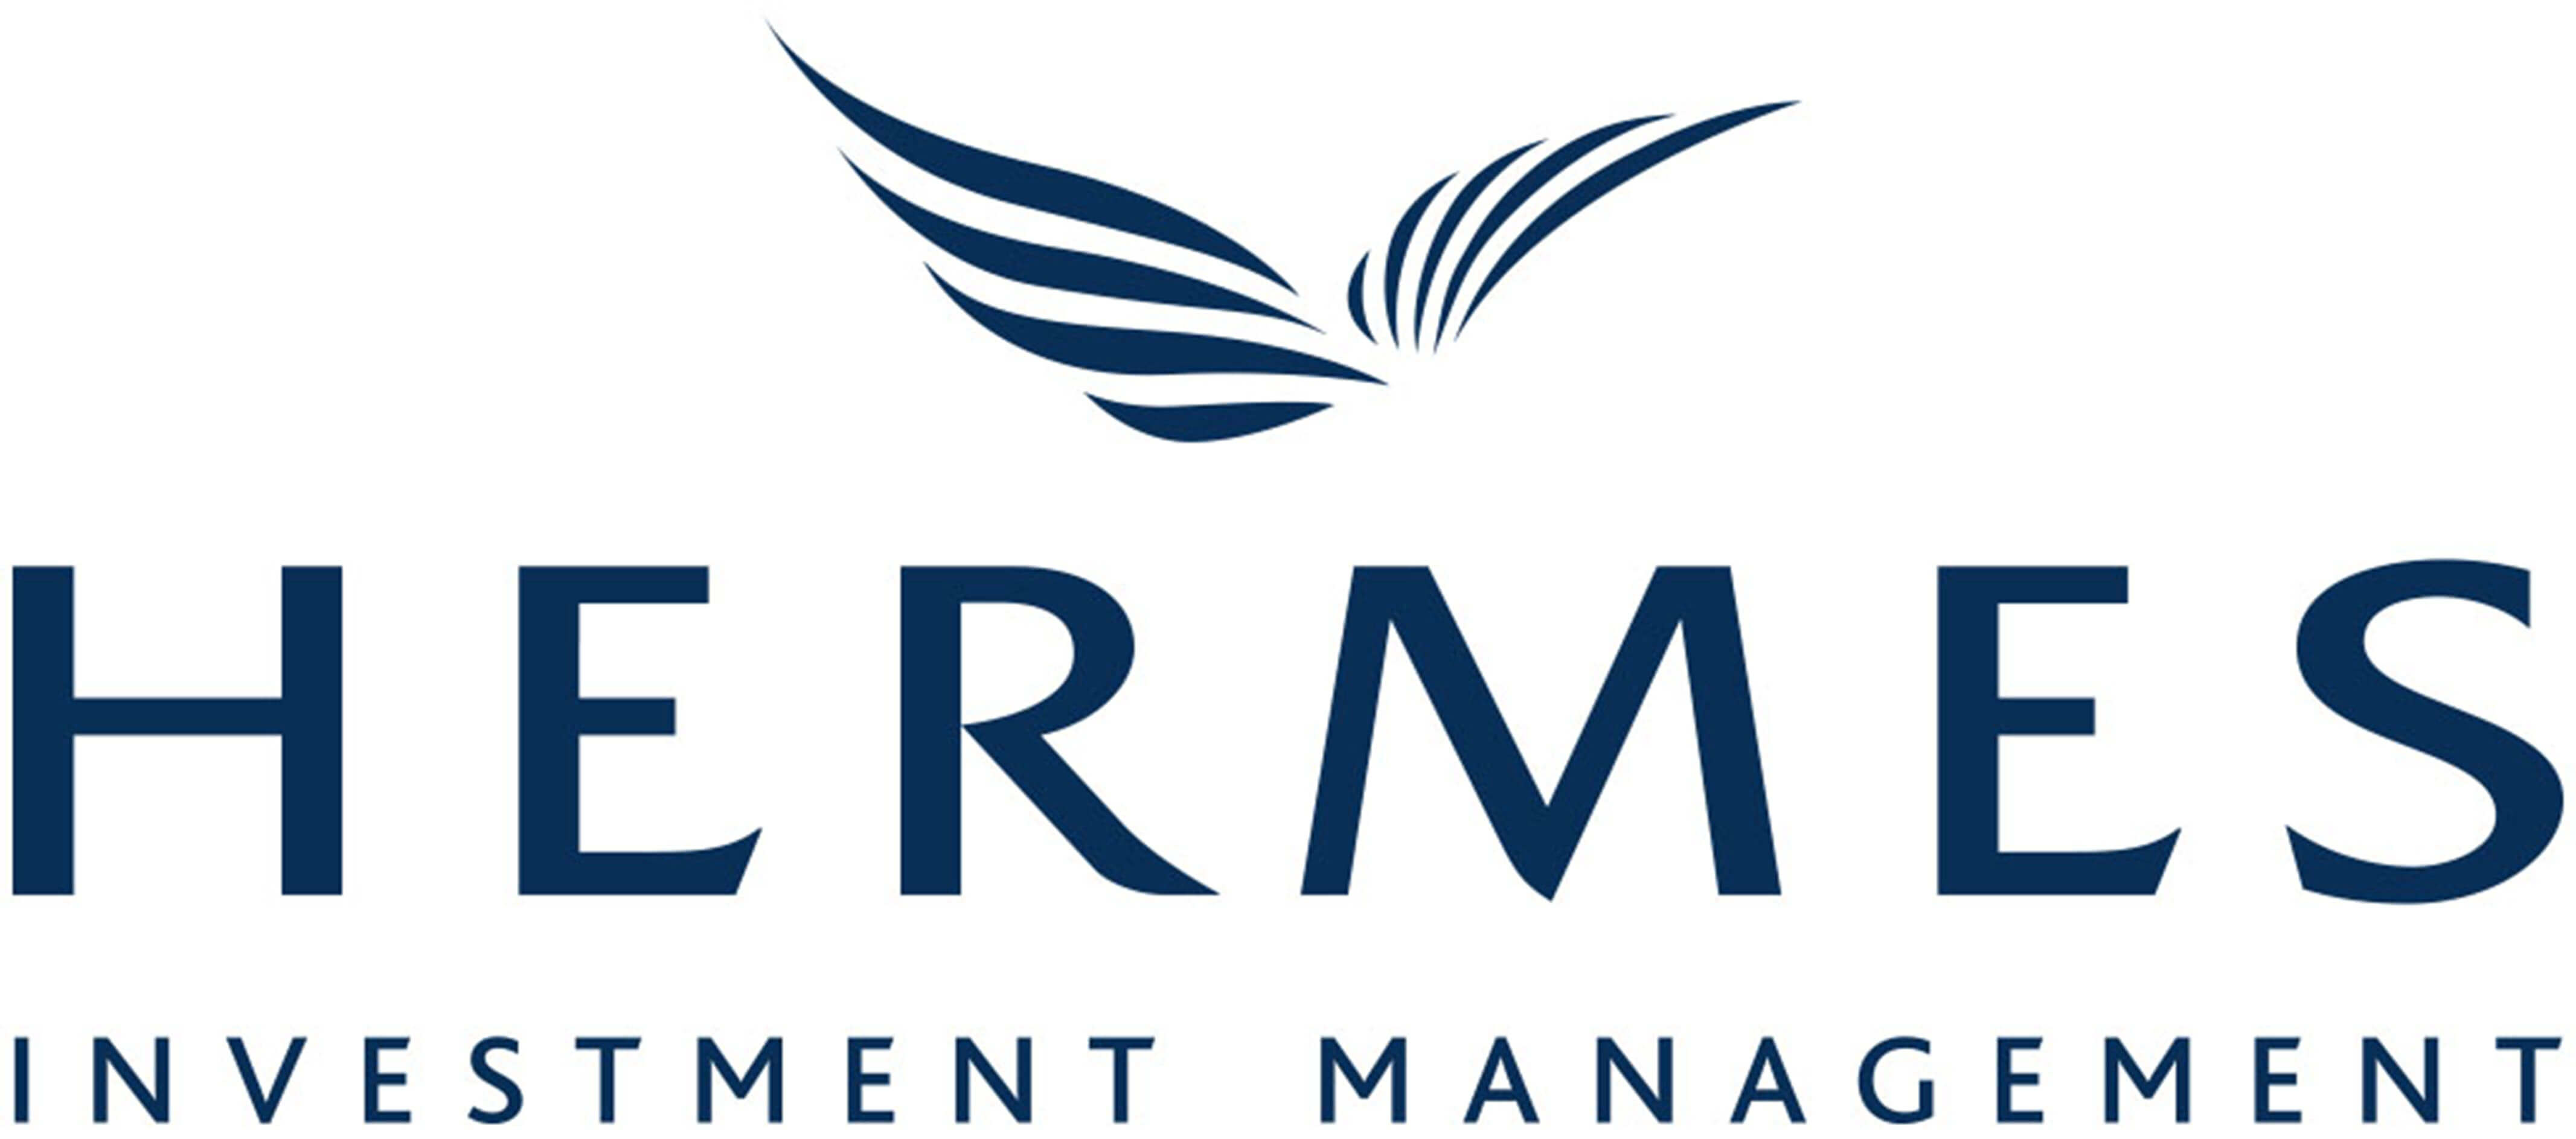 Hermes Investment Management-logo